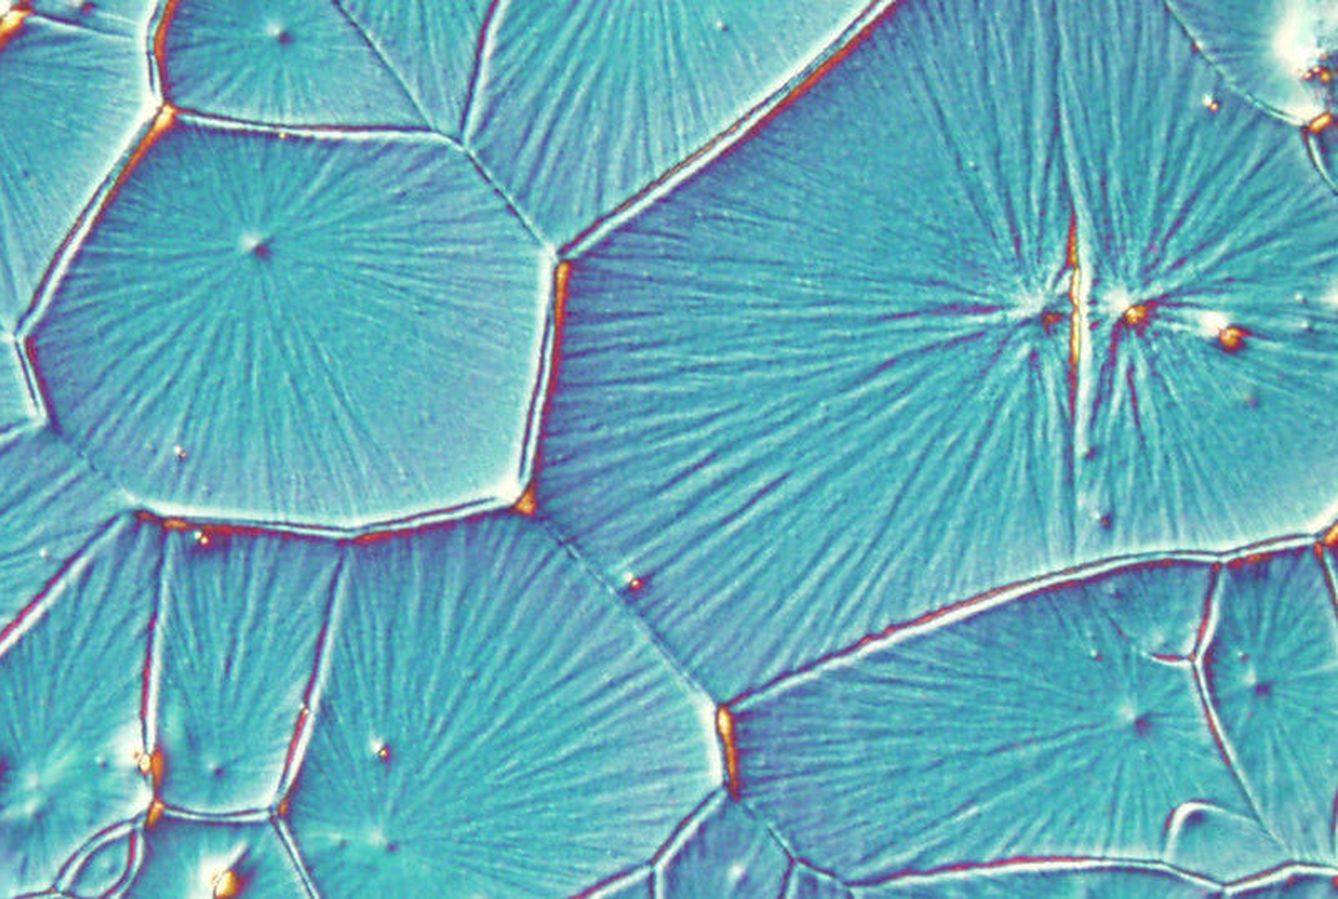 Cristales de perovskita en células fotovoltaicas (Laboratorio Nacional de Los Alamos)